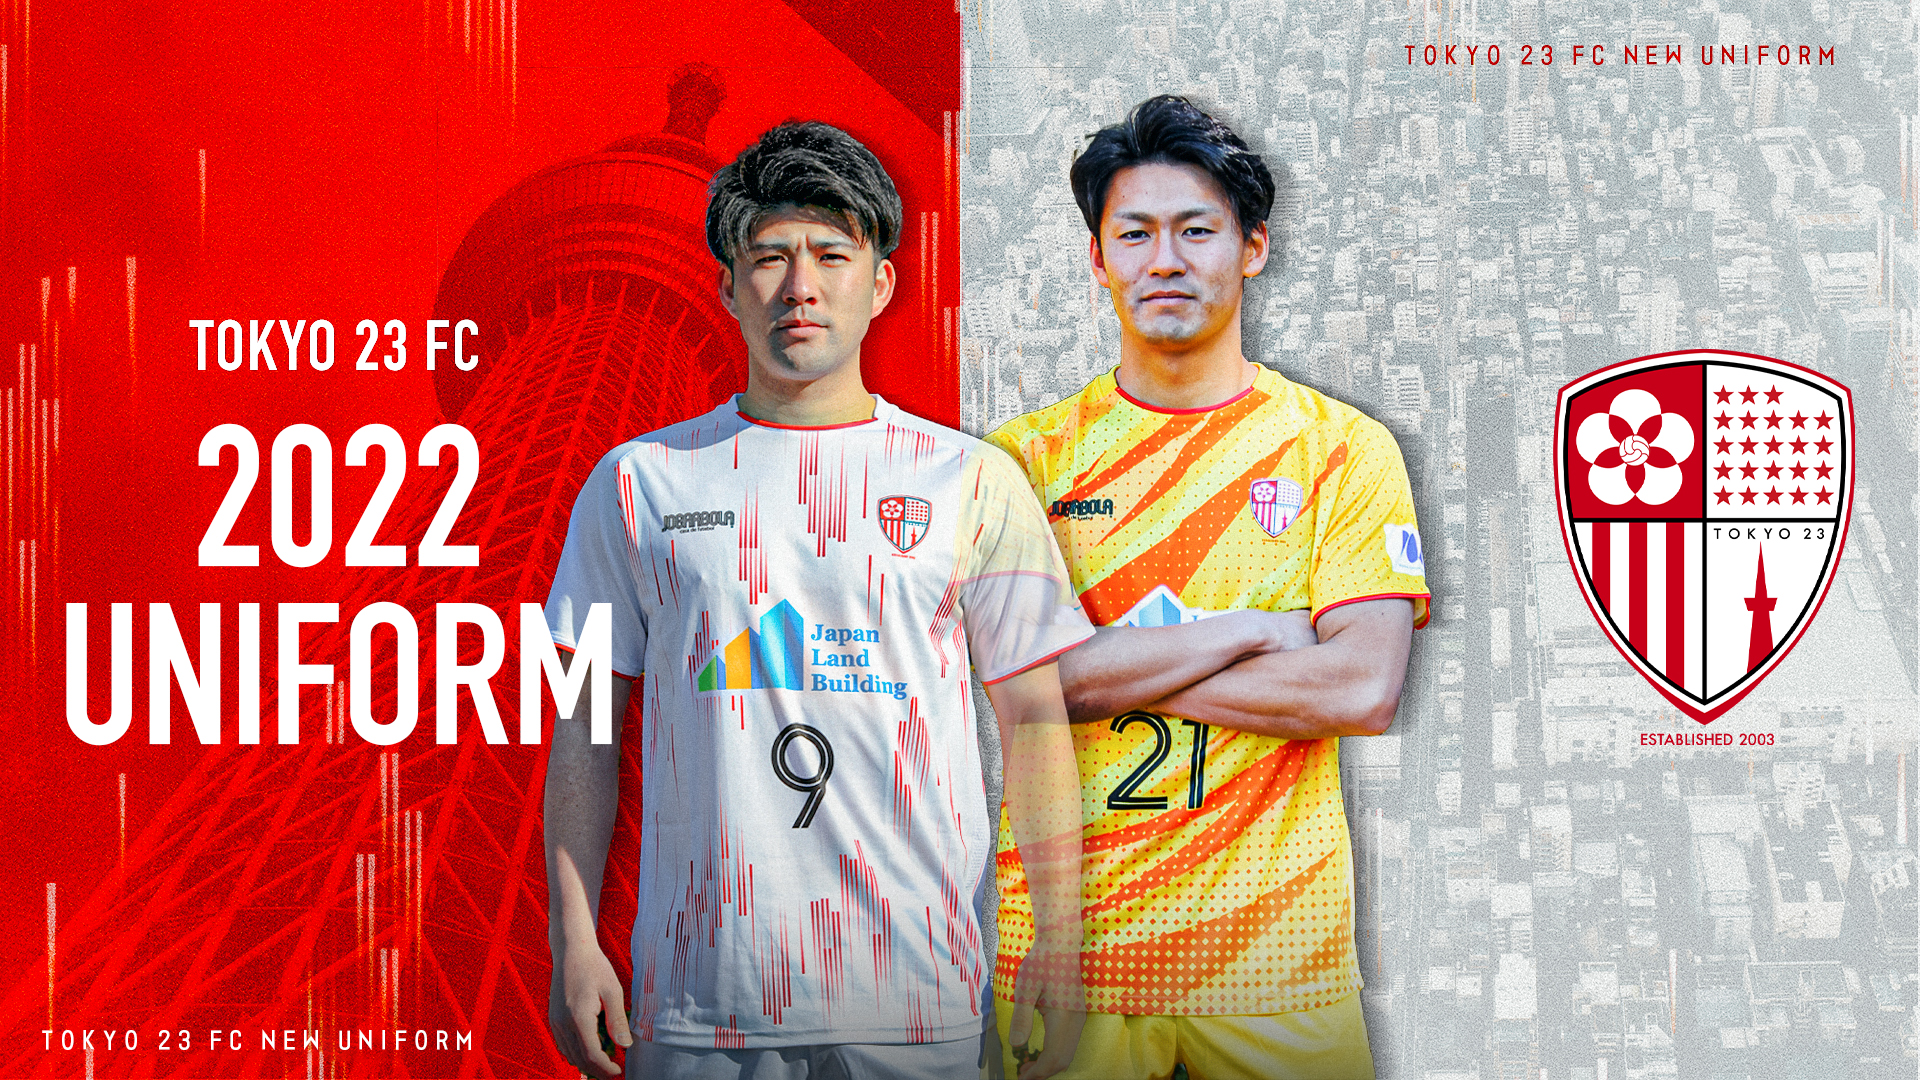 東京23fcオフィシャルサイト 東京23fc 東京23区という地域社会に貢献するフットボールクラブです